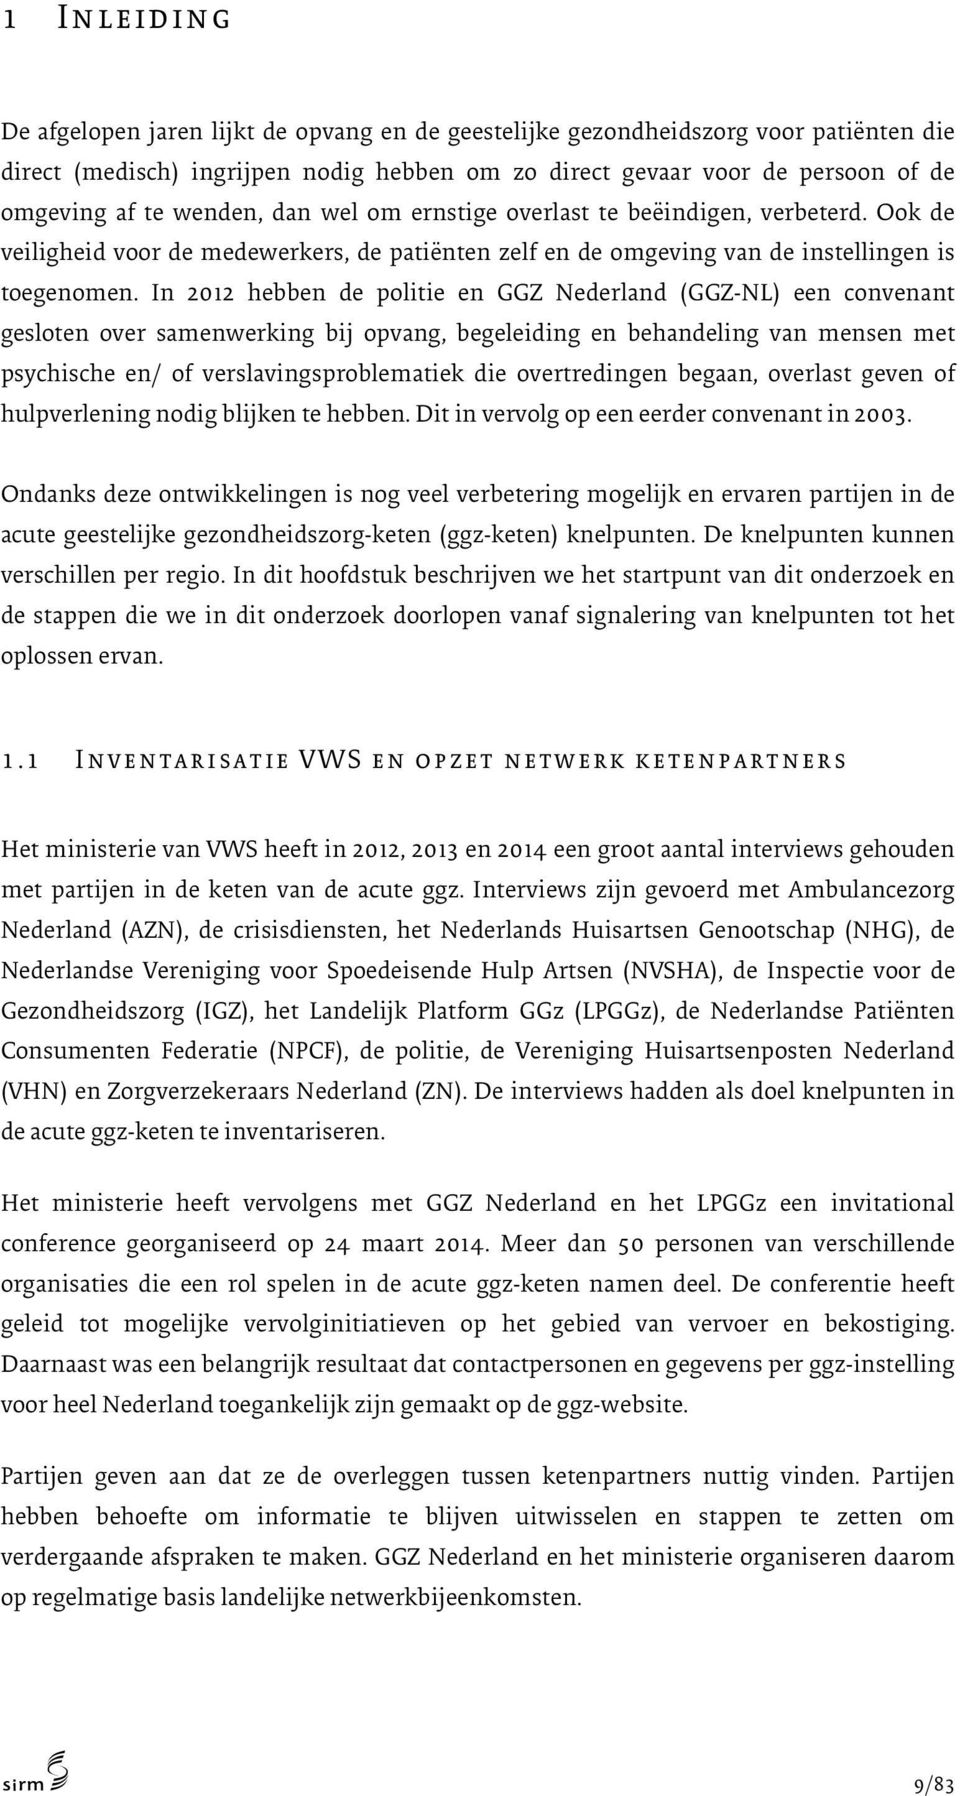 In 2012 hebben de politie en GGZ Nederland (GGZ-NL) een convenant gesloten over samenwerking bij opvang, begeleiding en behandeling van mensen met psychische en/ of verslavingsproblematiek die